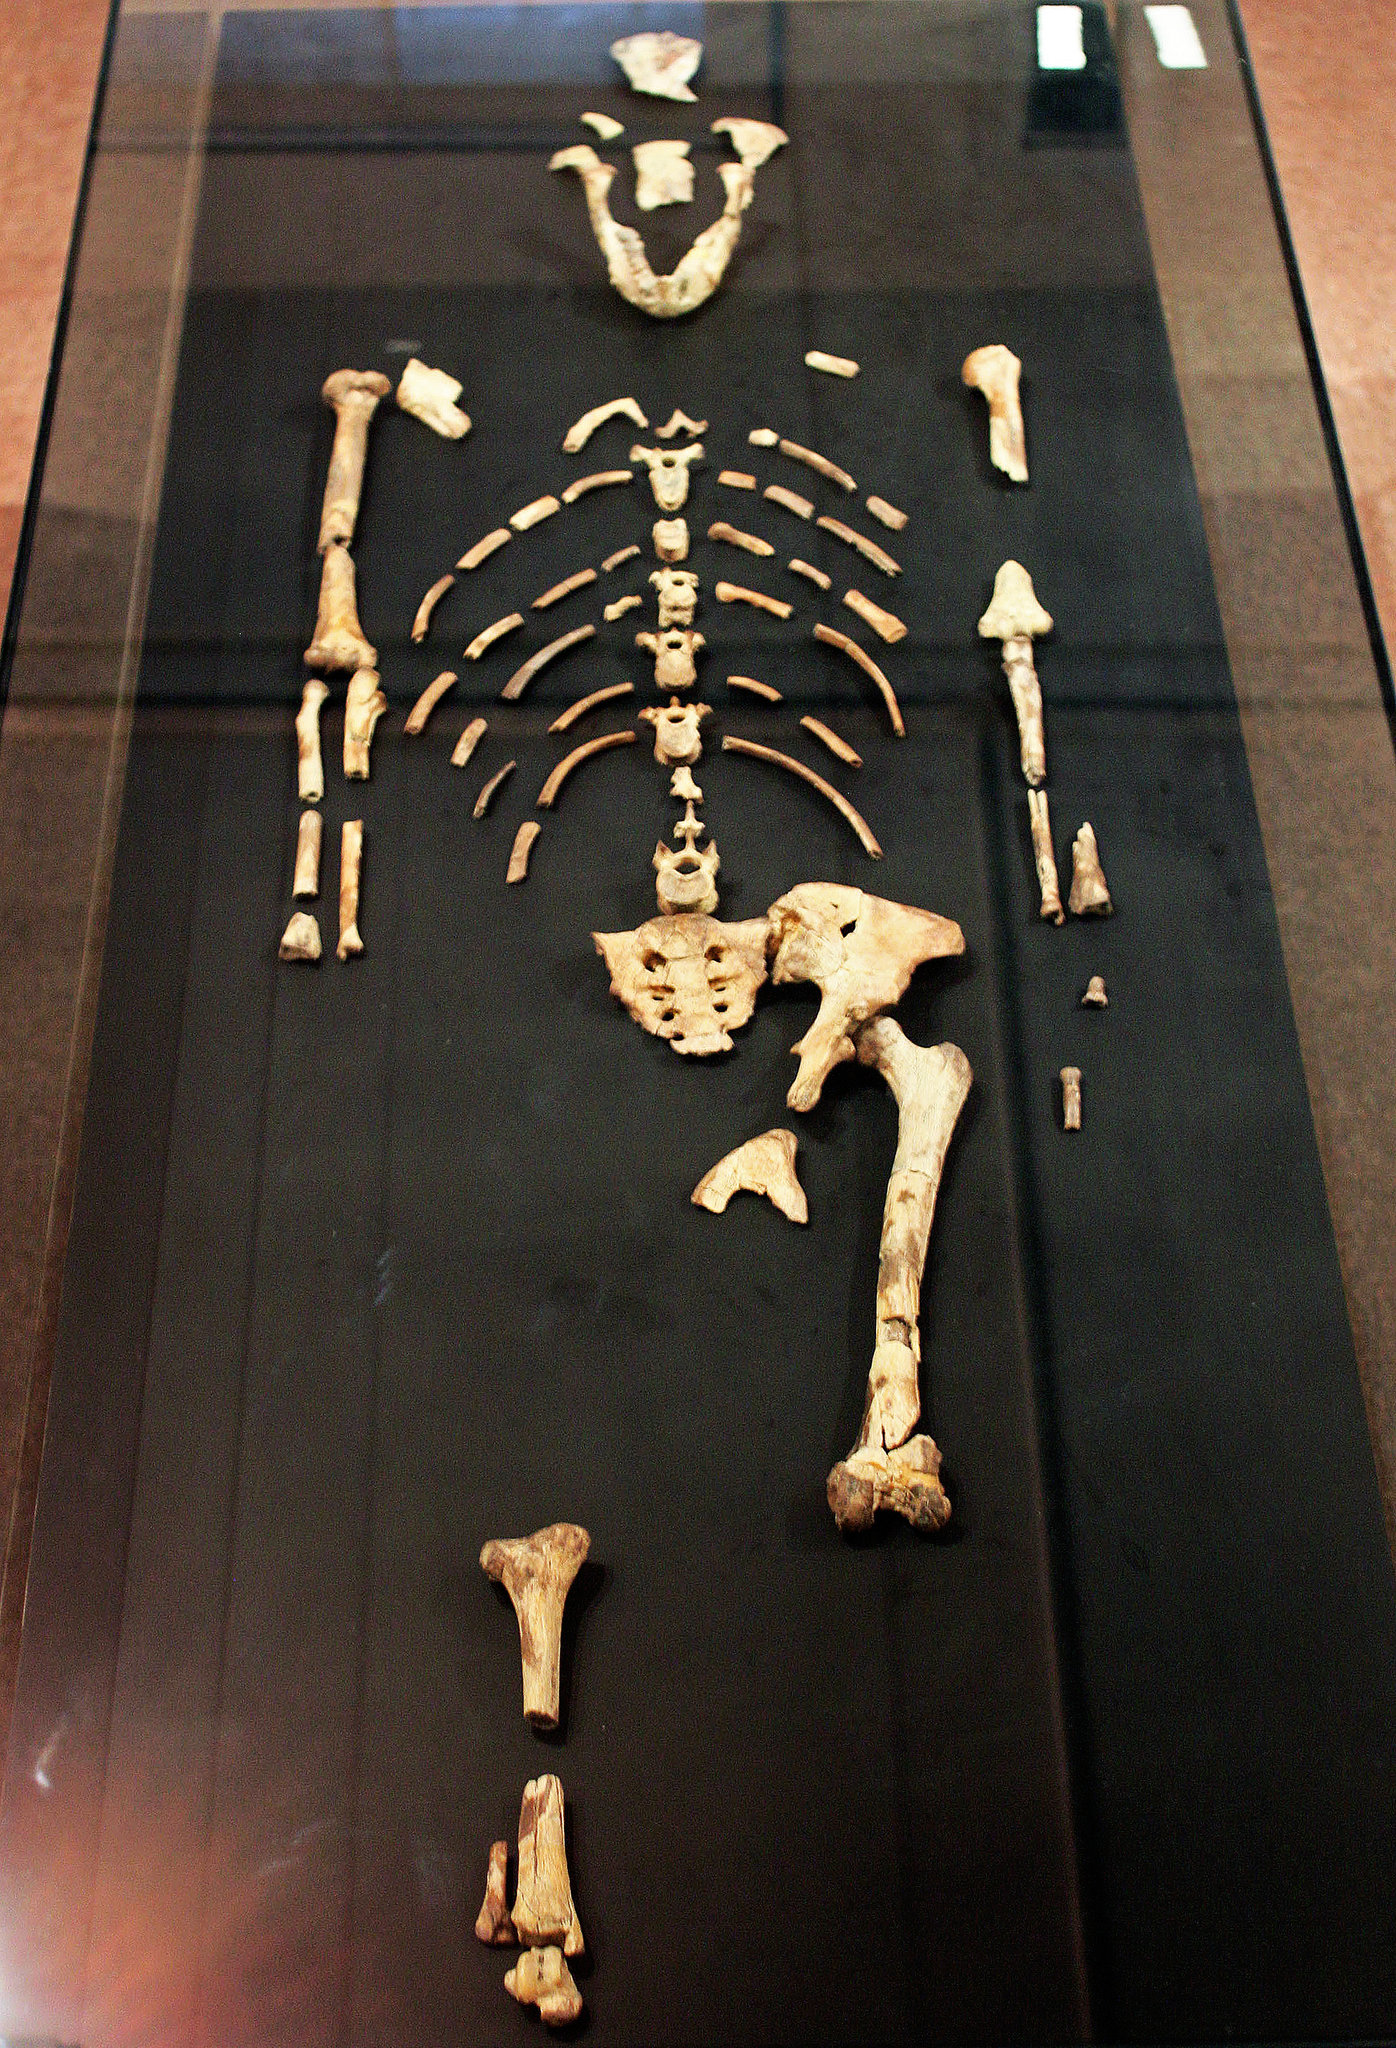 Kim jest Lucy australopithecus szkielet